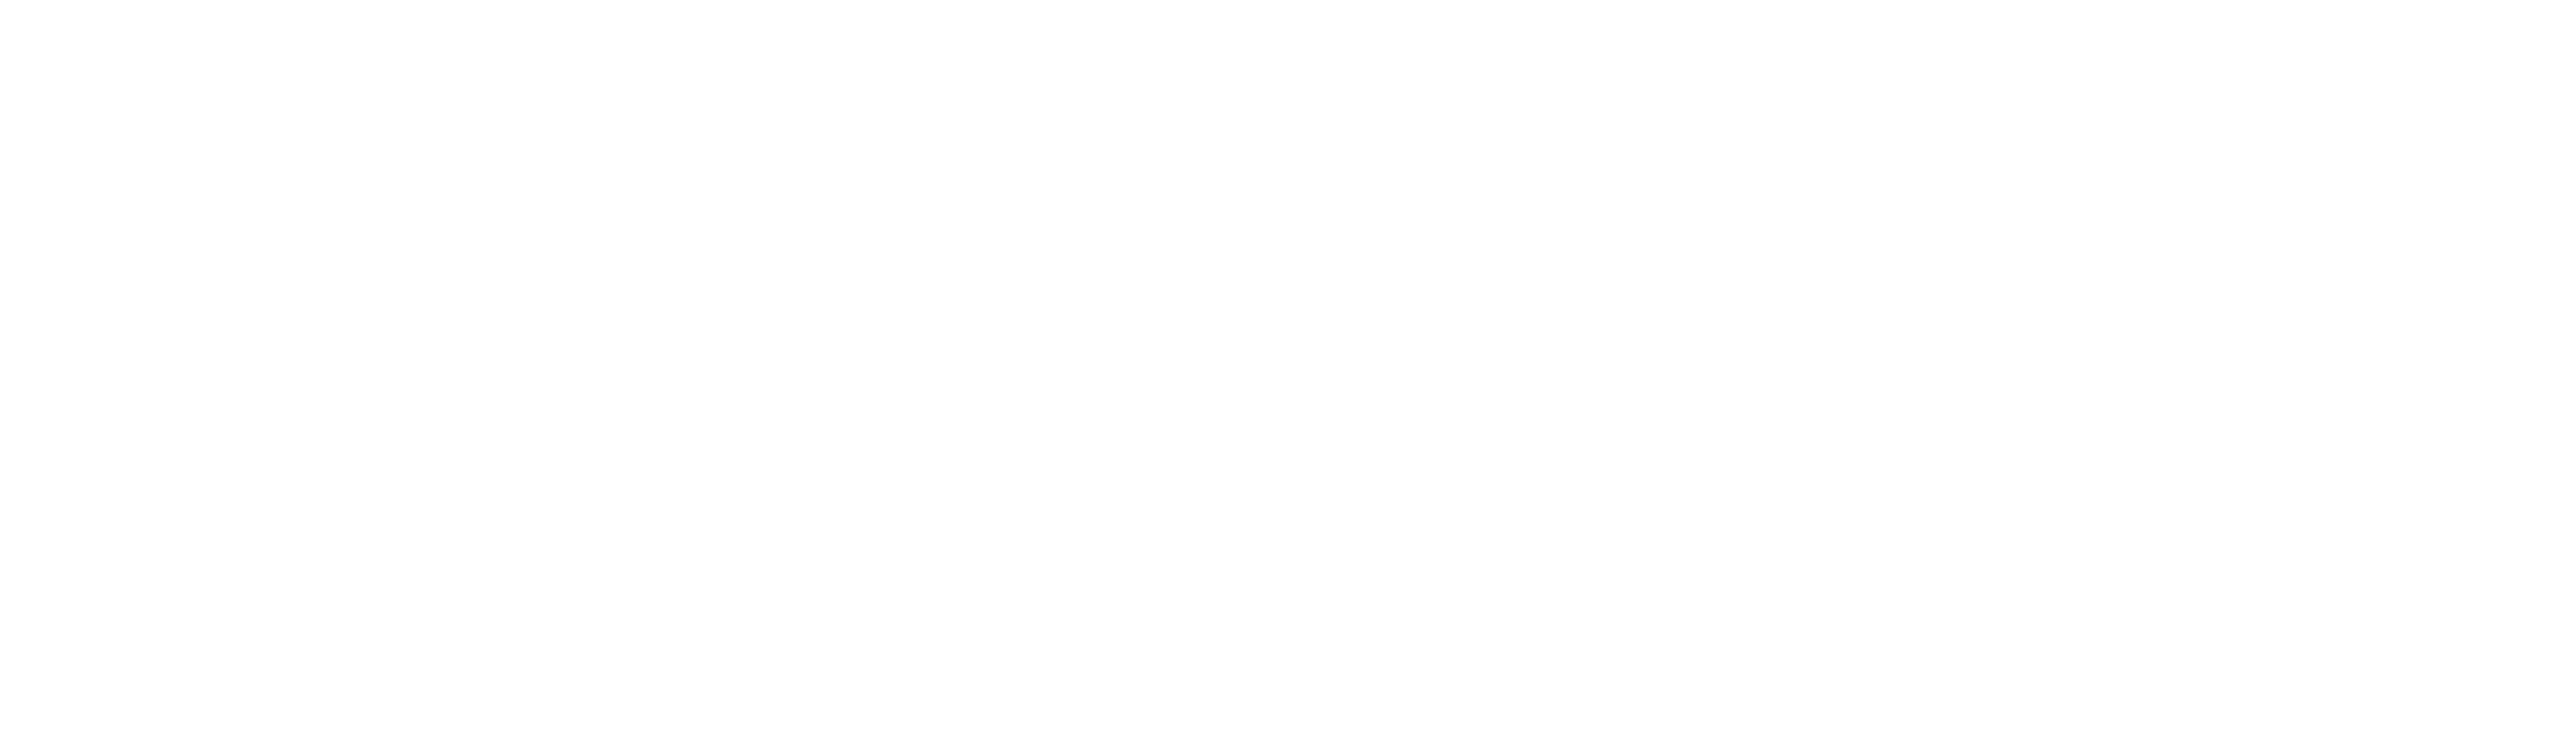 第01回世界ボーカロイド大会 The World Vocaloid Convention